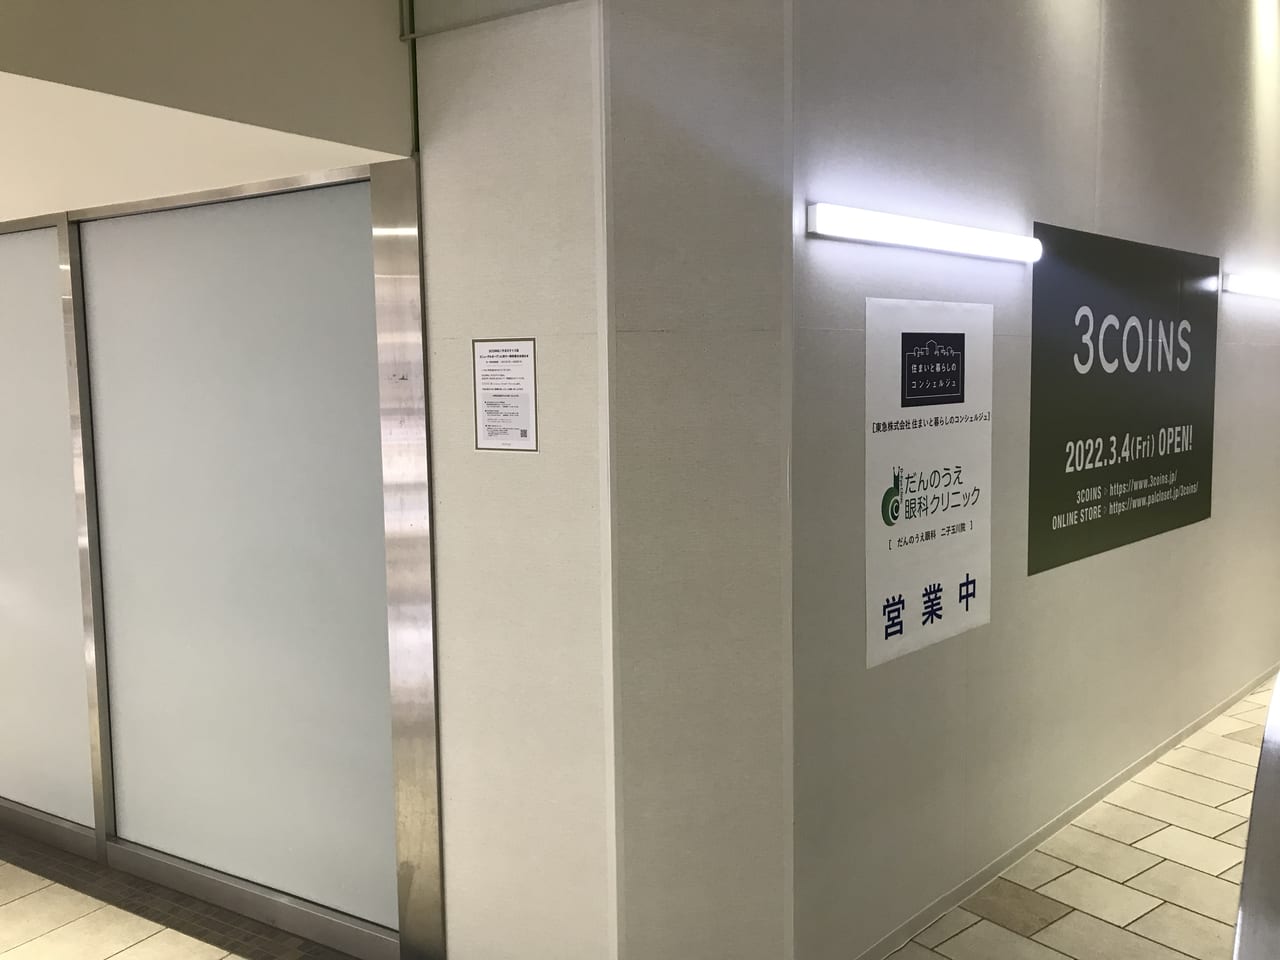 世田谷区3COINS 二子玉川ライズ店は現在リニューアル中、2022年3月4日にリニューアルオープン予定です！